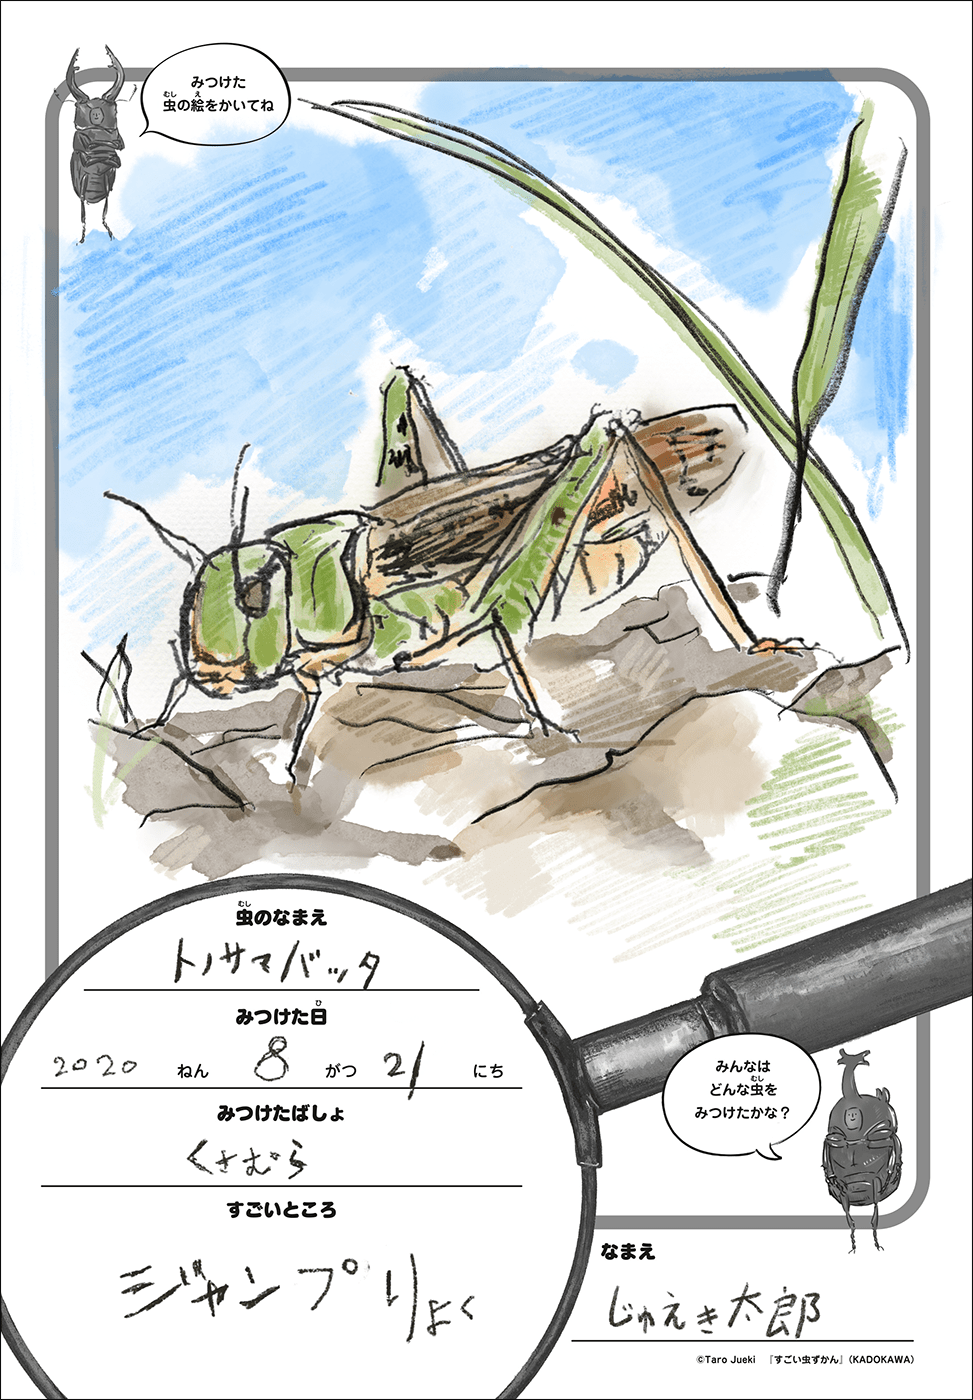 すごい虫ずかん オリジナル昆虫観察シート をダウンロードしよう ヨメルバ Kadokawa児童書ポータルサイト